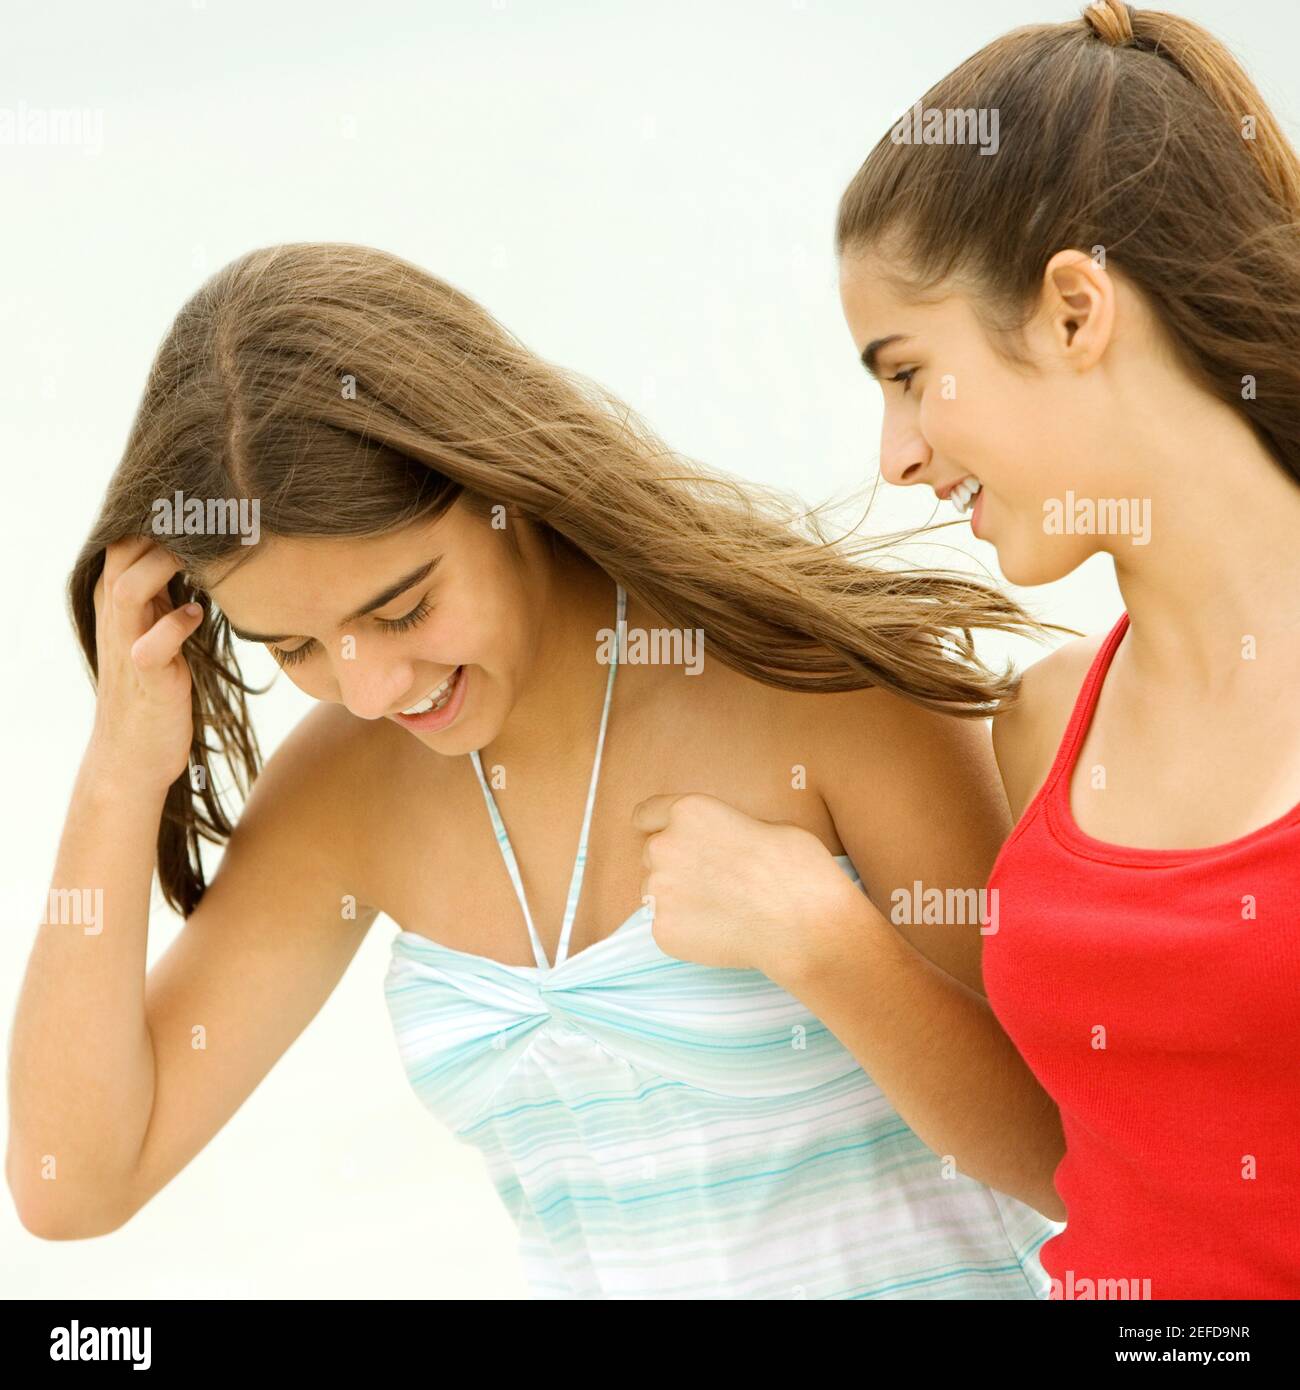 Nahaufnahme eines Mädchens und eines Teenagers, die fröhlich aussehen Stockfoto